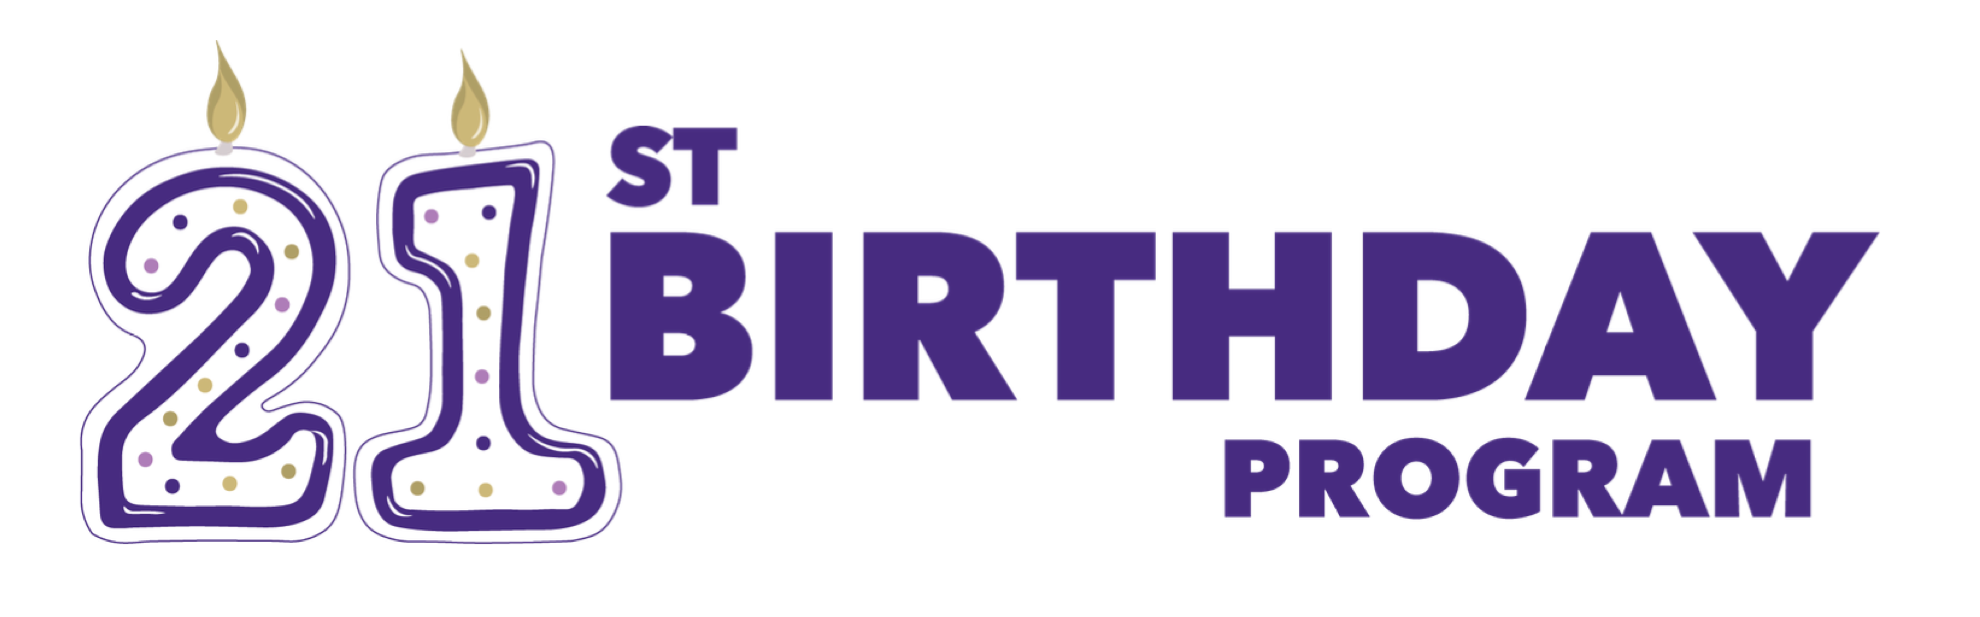 21-birthday-logo.png